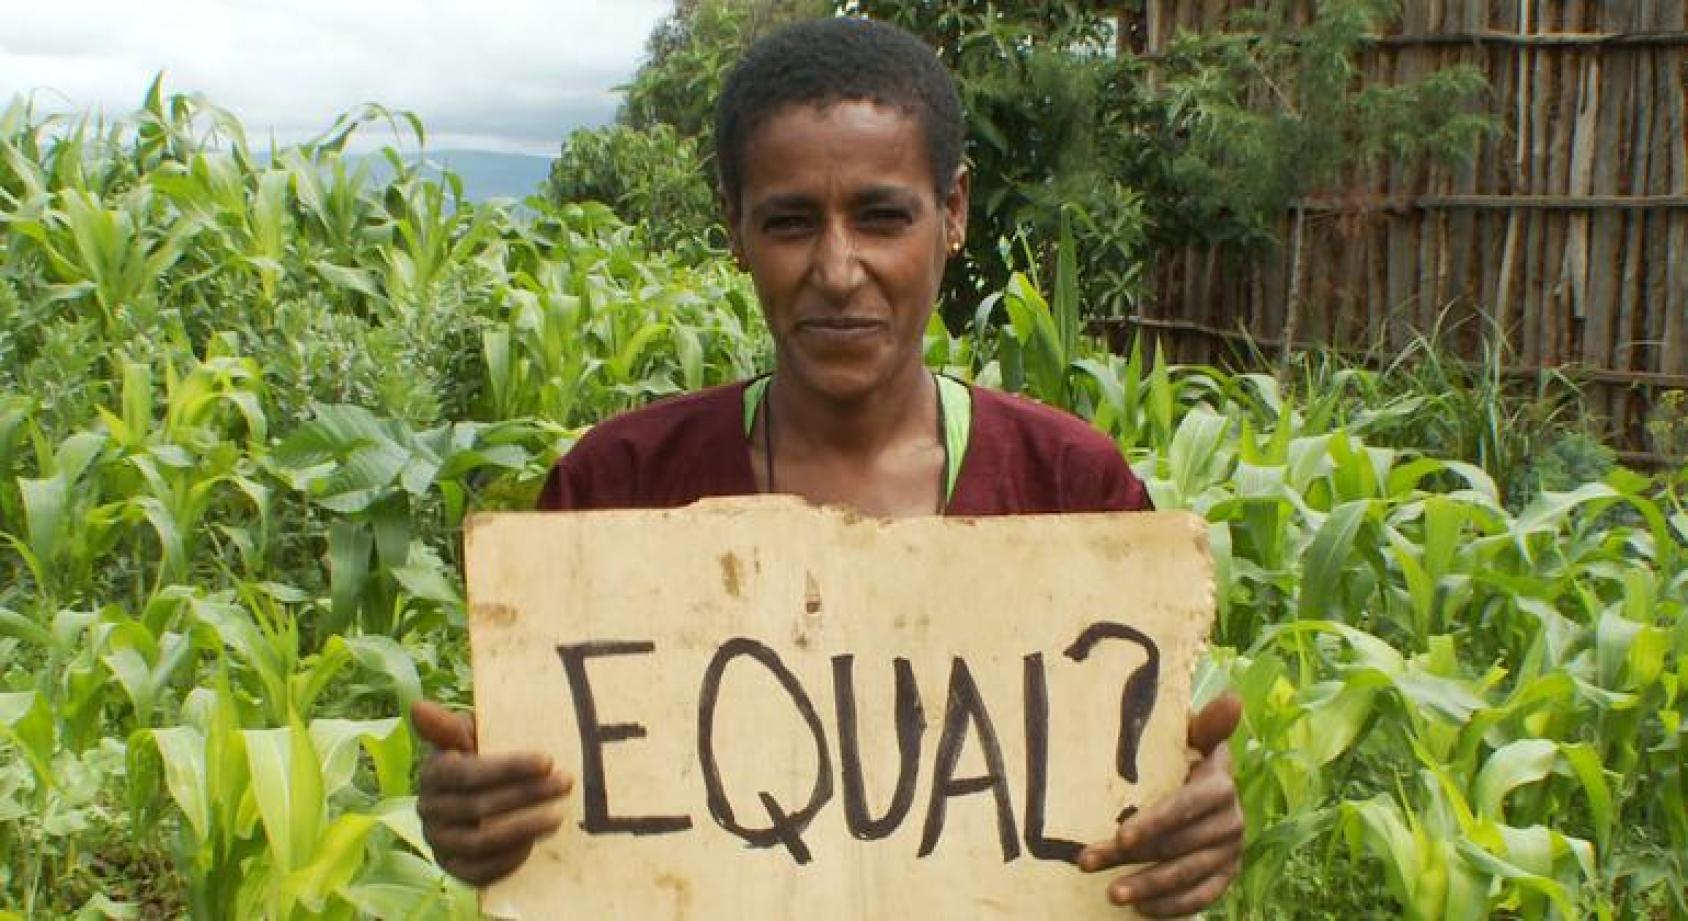 Женщина на фоне плантации с табличкой в руках " Равные?"